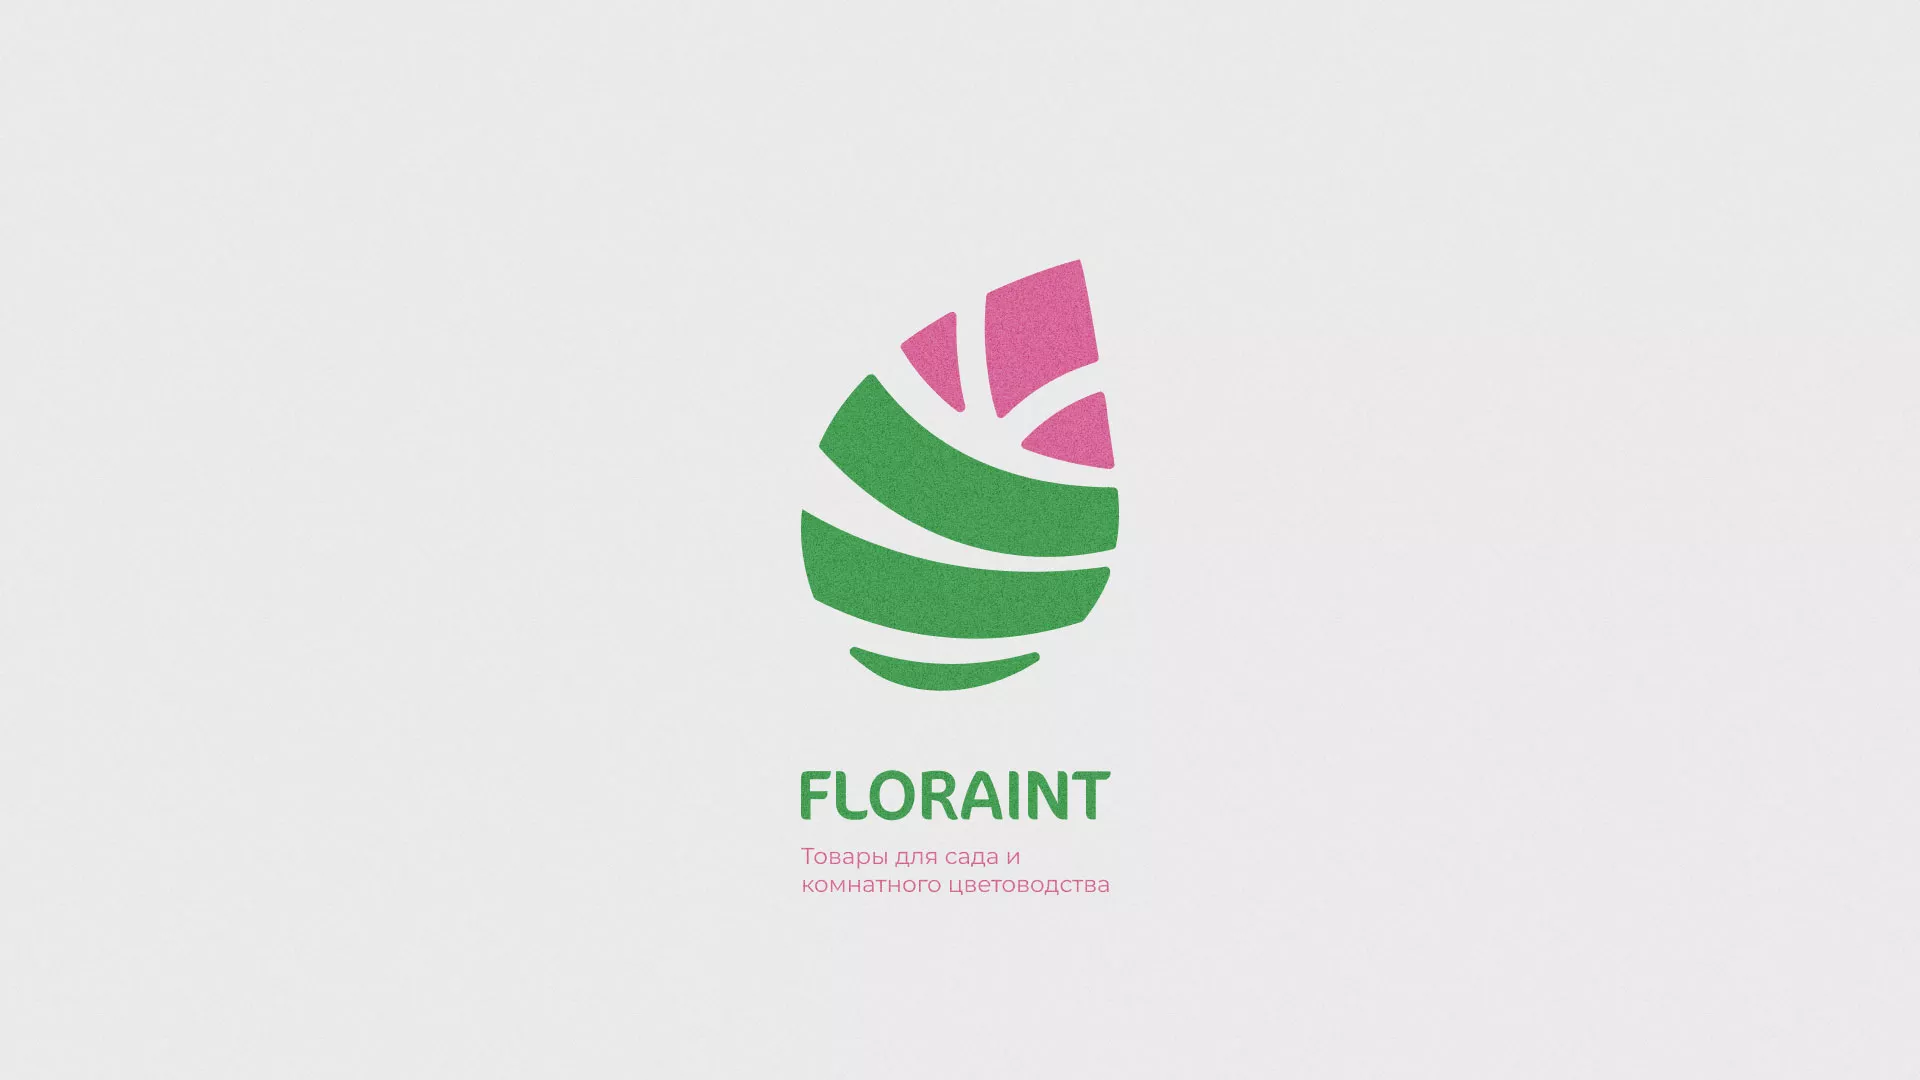 Разработка оформления профиля Instagram для магазина «Floraint» в Сосновке